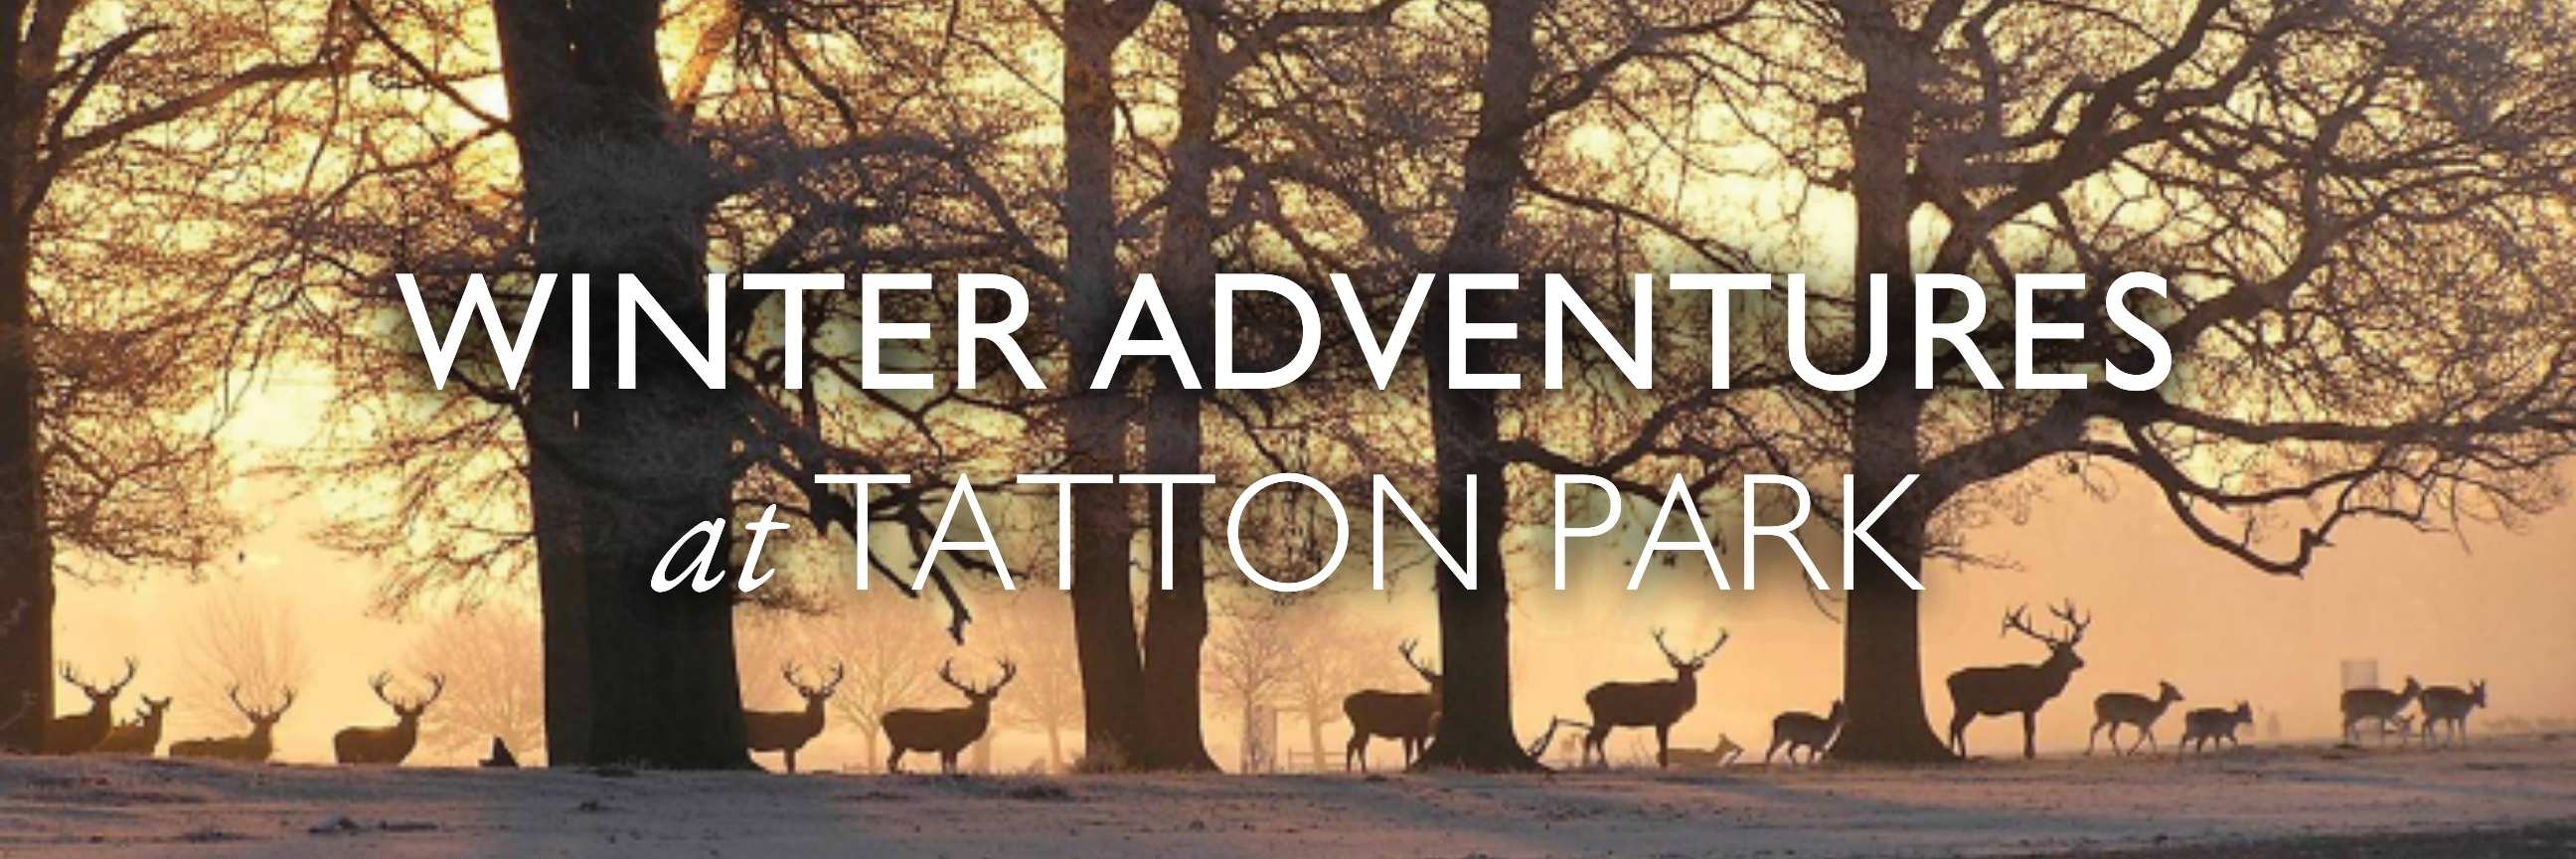 Winter Adventures Header